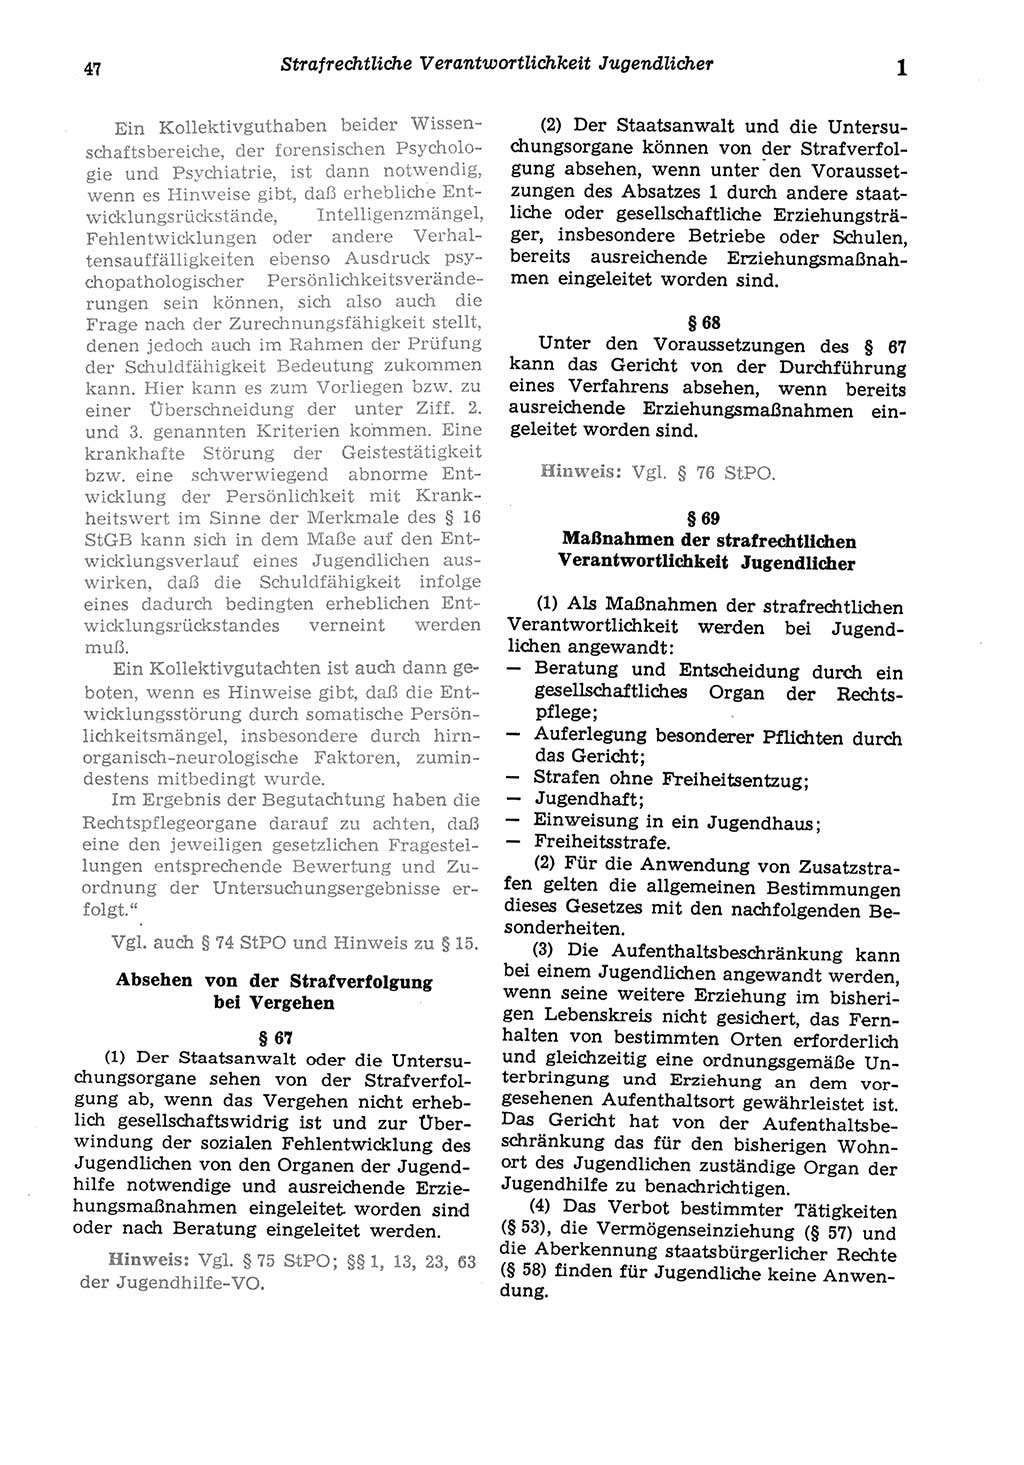 Strafgesetzbuch (StGB) der Deutschen Demokratischen Republik (DDR) und angrenzende Gesetze und Bestimmungen 1975, Seite 47 (StGB DDR Ges. Best. 1975, S. 47)